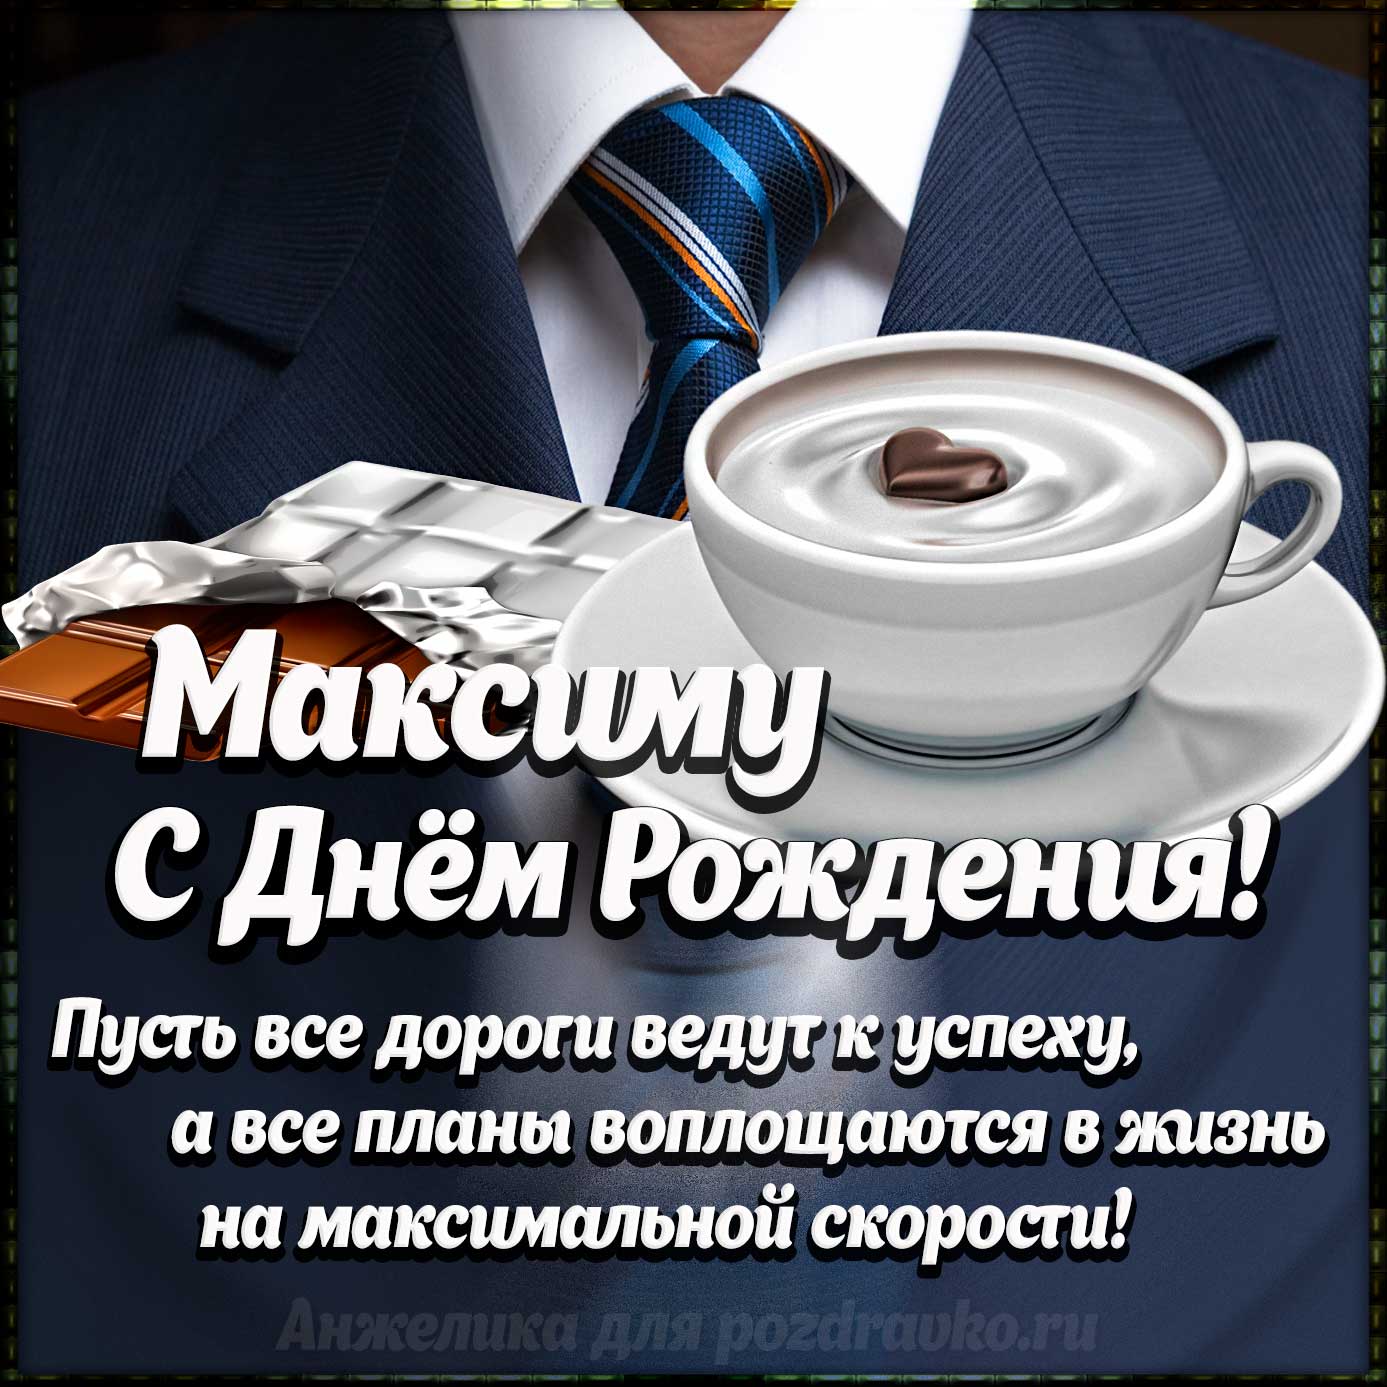 Открытка - Максиму с Днем Рождения с галстуком, кофе и пожеланием. Скачать бесплатно или отправить картинку.